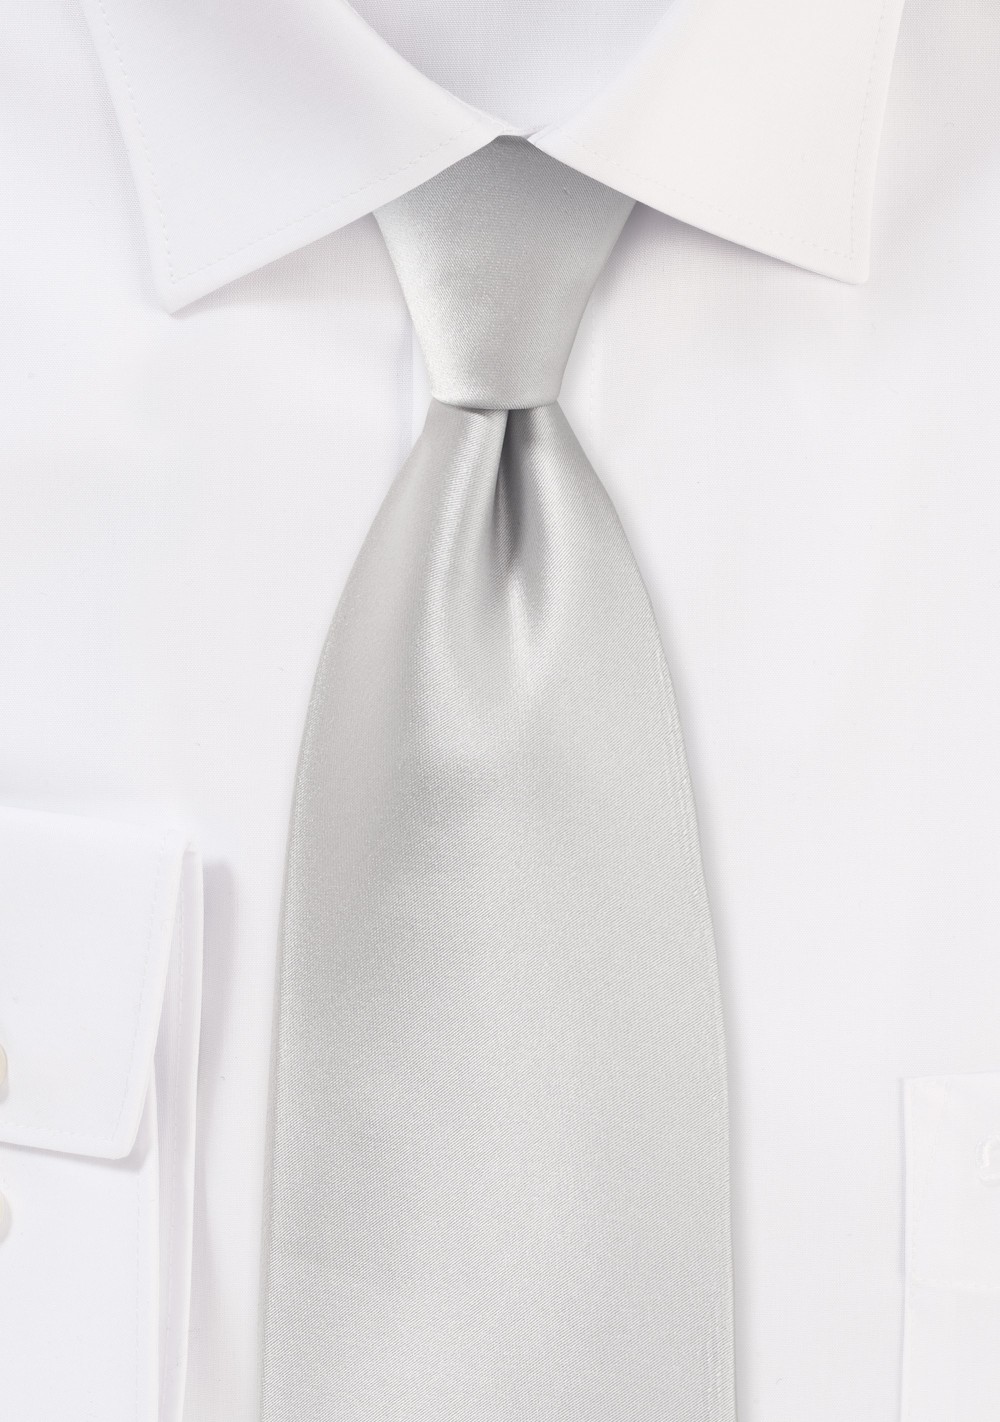 Solid Color Tie in Light Silver